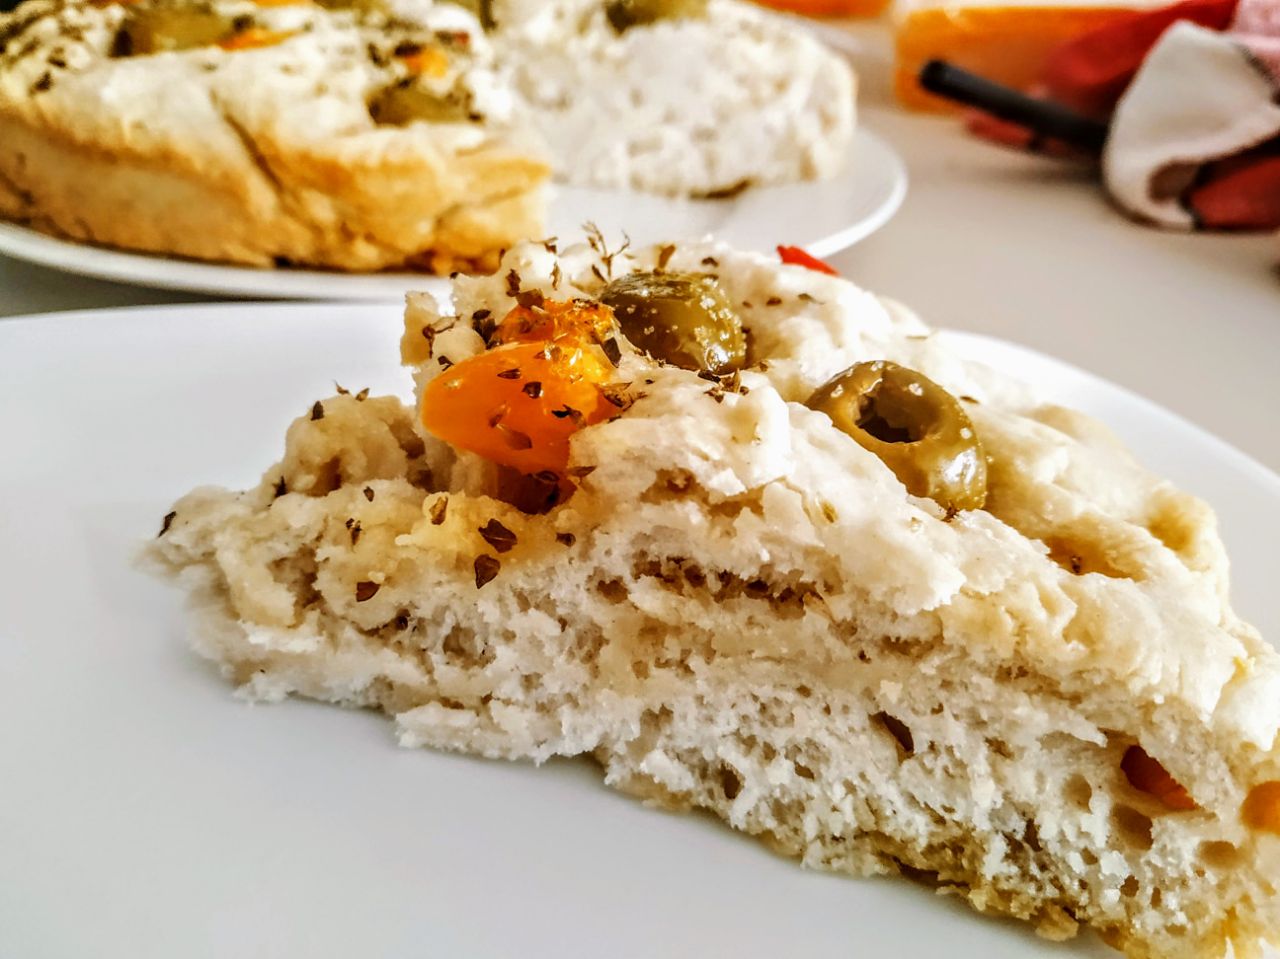 Antipasti economici senza burro e senza formaggio: focaccia alta con farina manitoba olio evo e olive verdi ai peperoni!